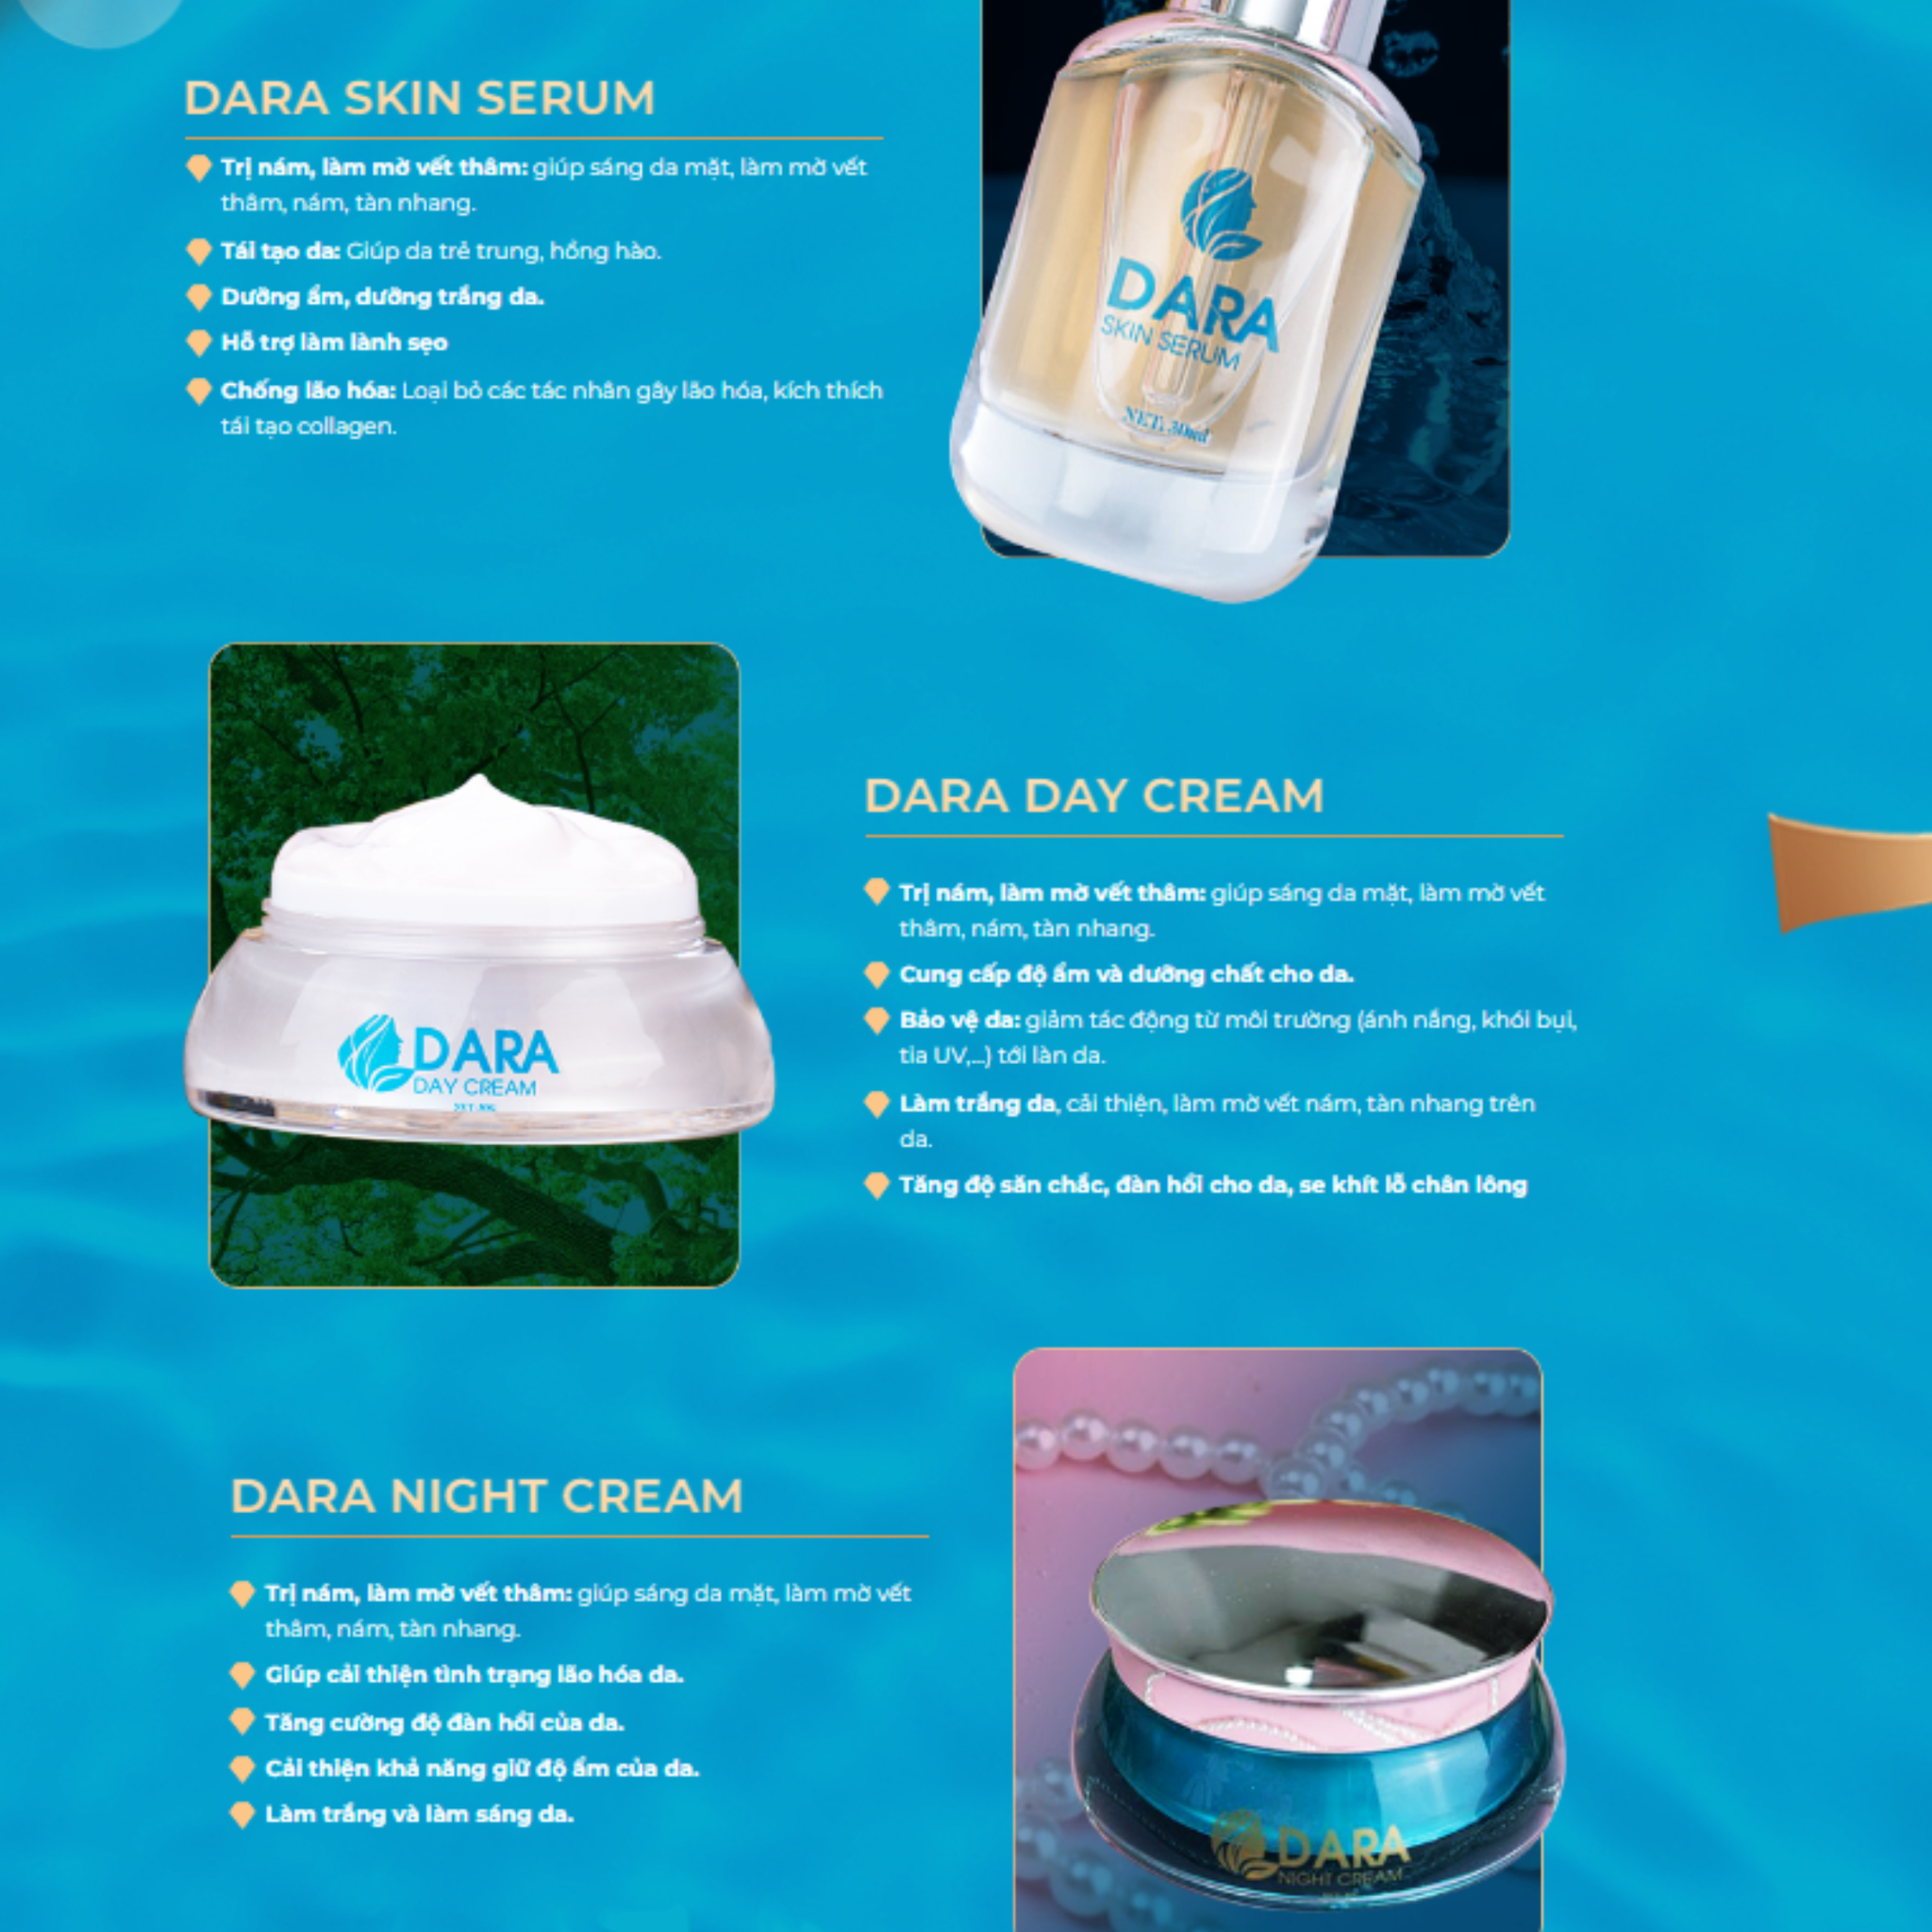 Gồm 3 sản phẩm chính: dara skin serum, dara day cream và dara night cream